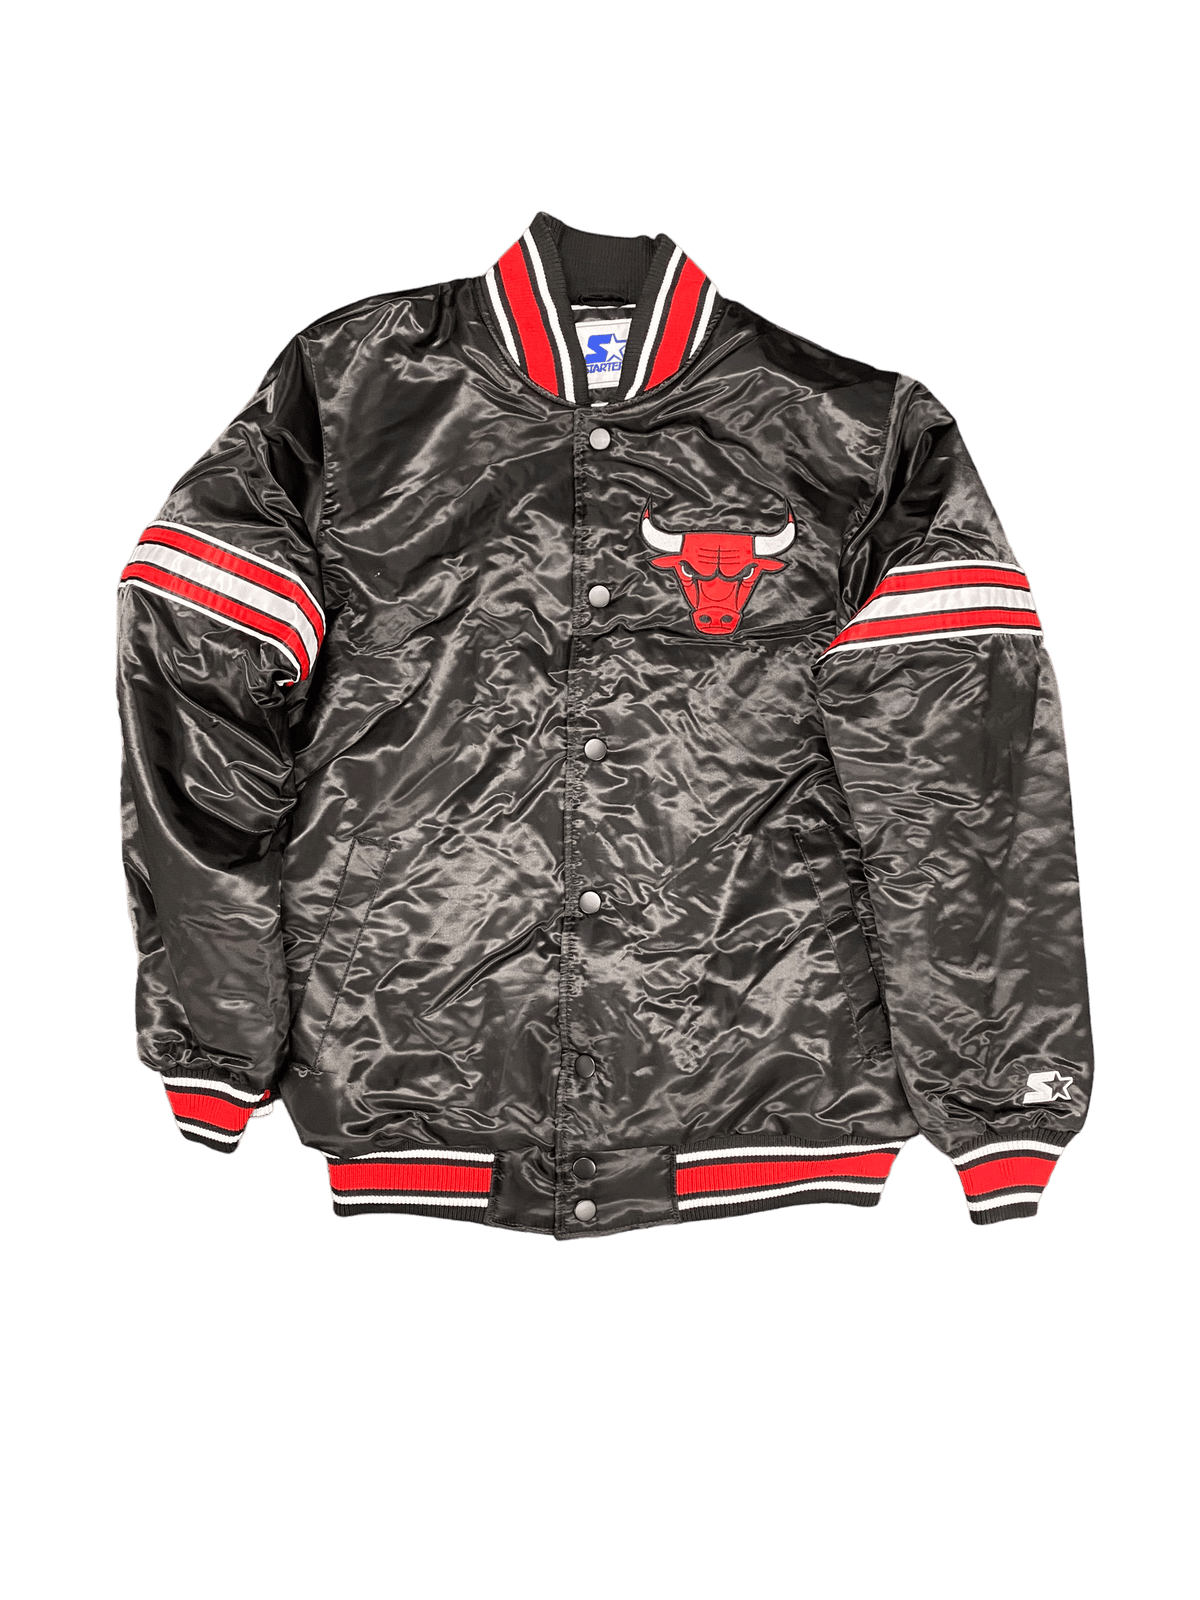 Men's Classics Chicago Bulls White Bomber Jacket